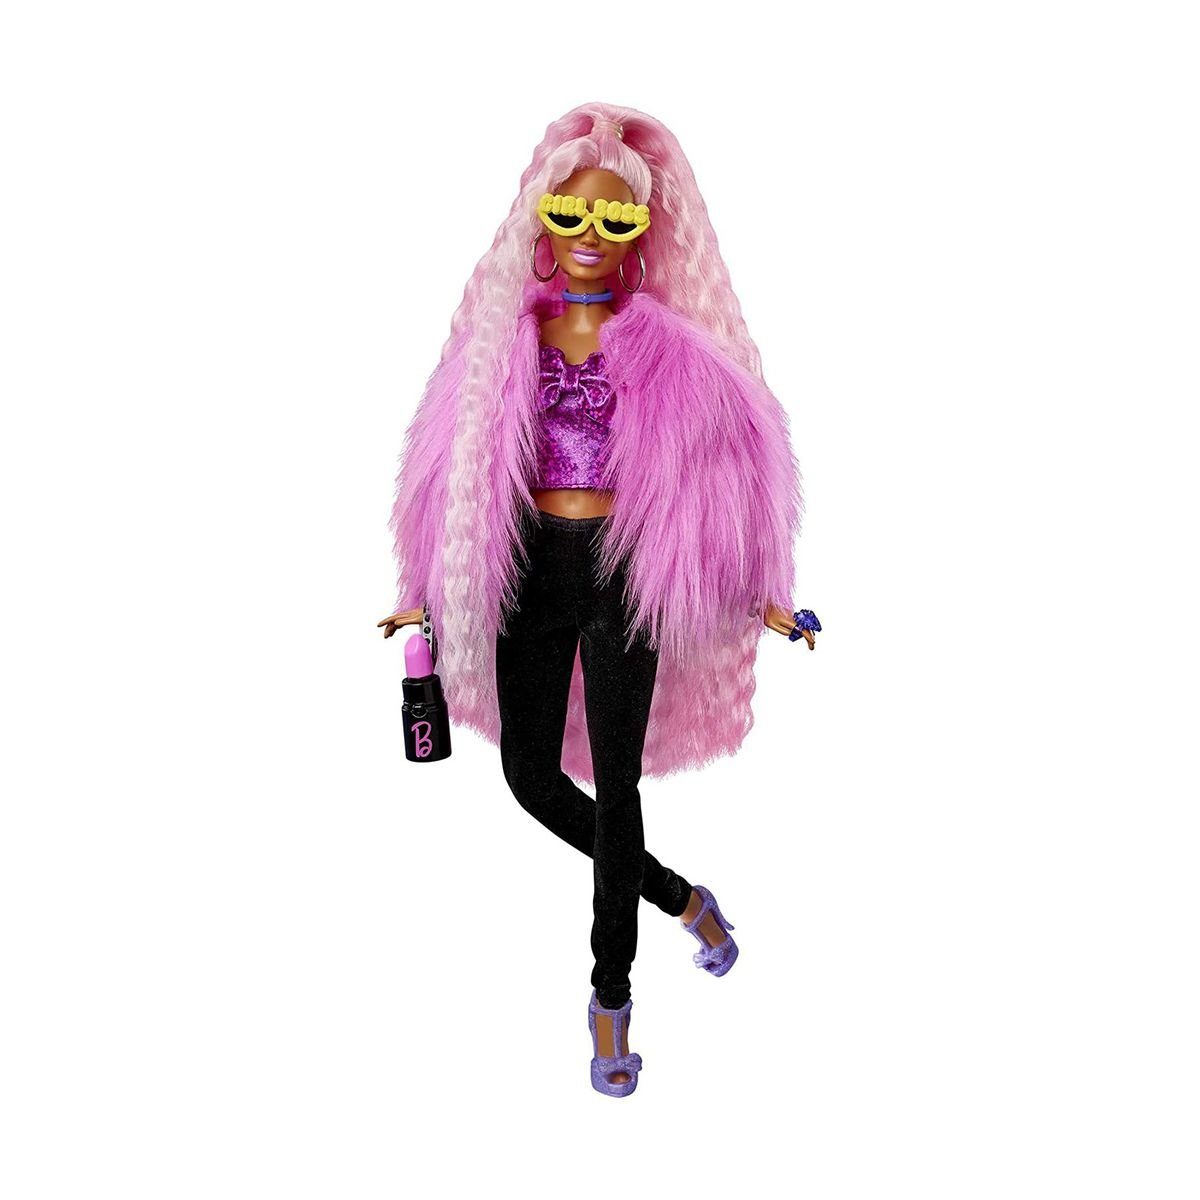 HGR60 - Puppe - Extra Mattel - Mattel® Barbie Styling-Zubehör mit Deluxe Anziehpuppe und Tier